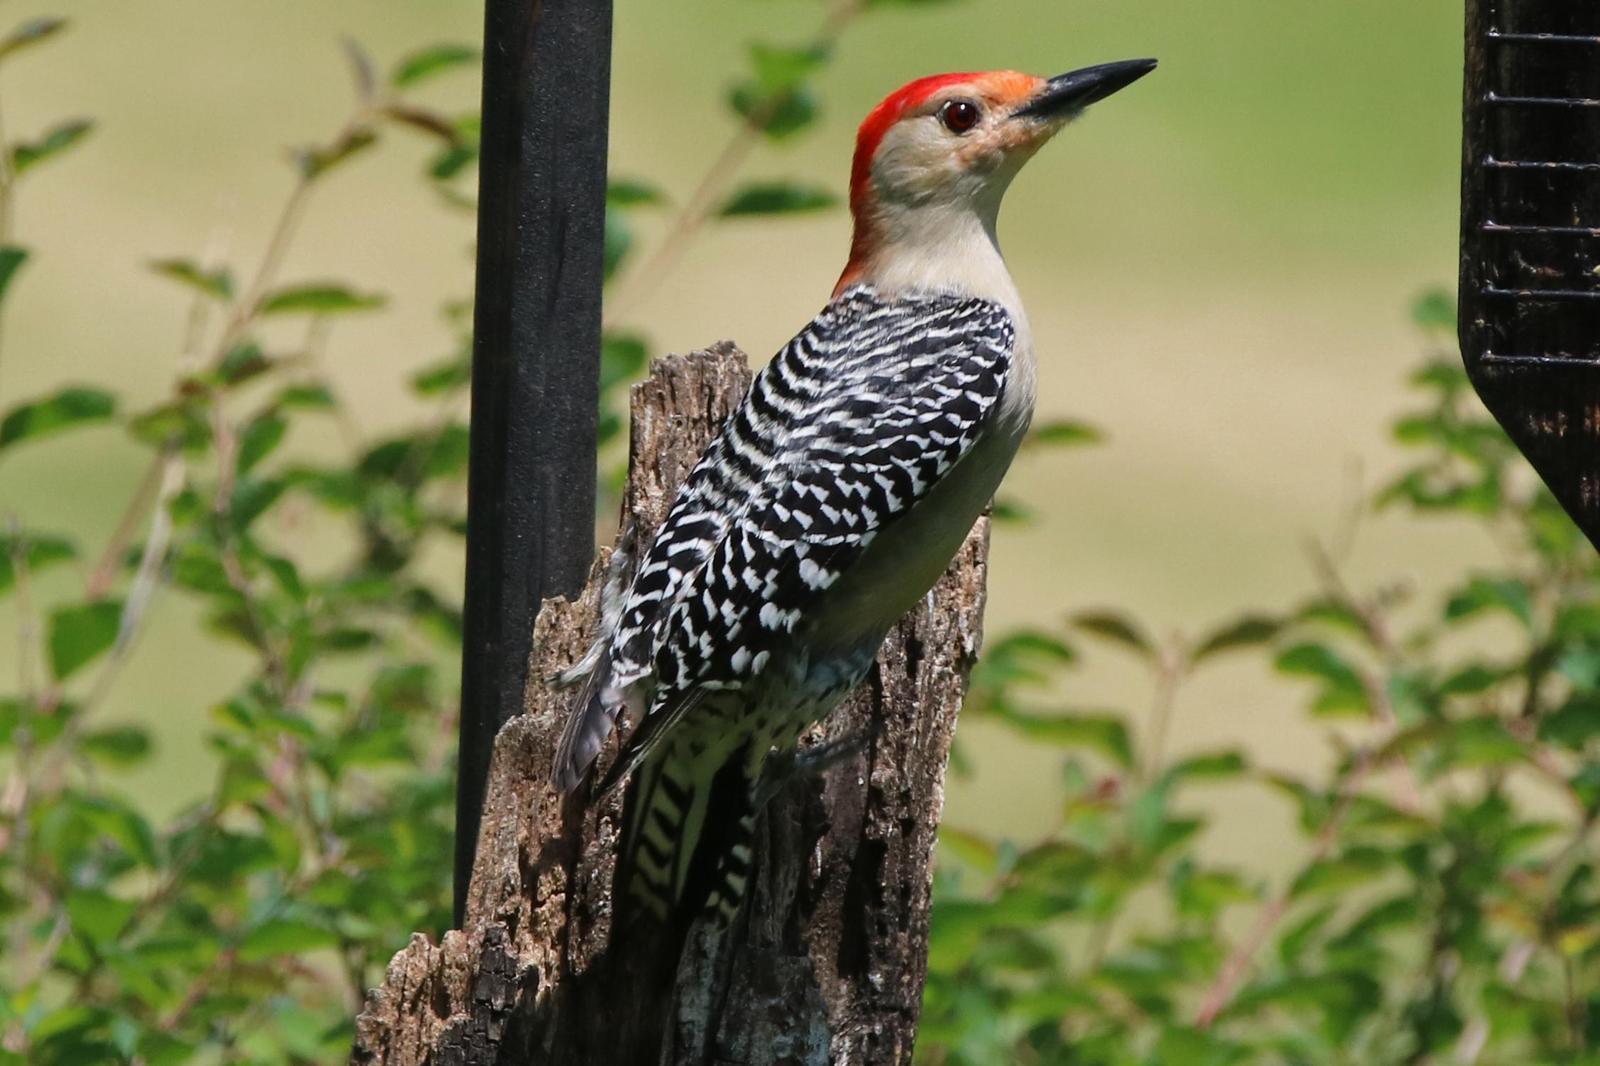 Red-bellied Woodpecker Photo by Kristy Baker